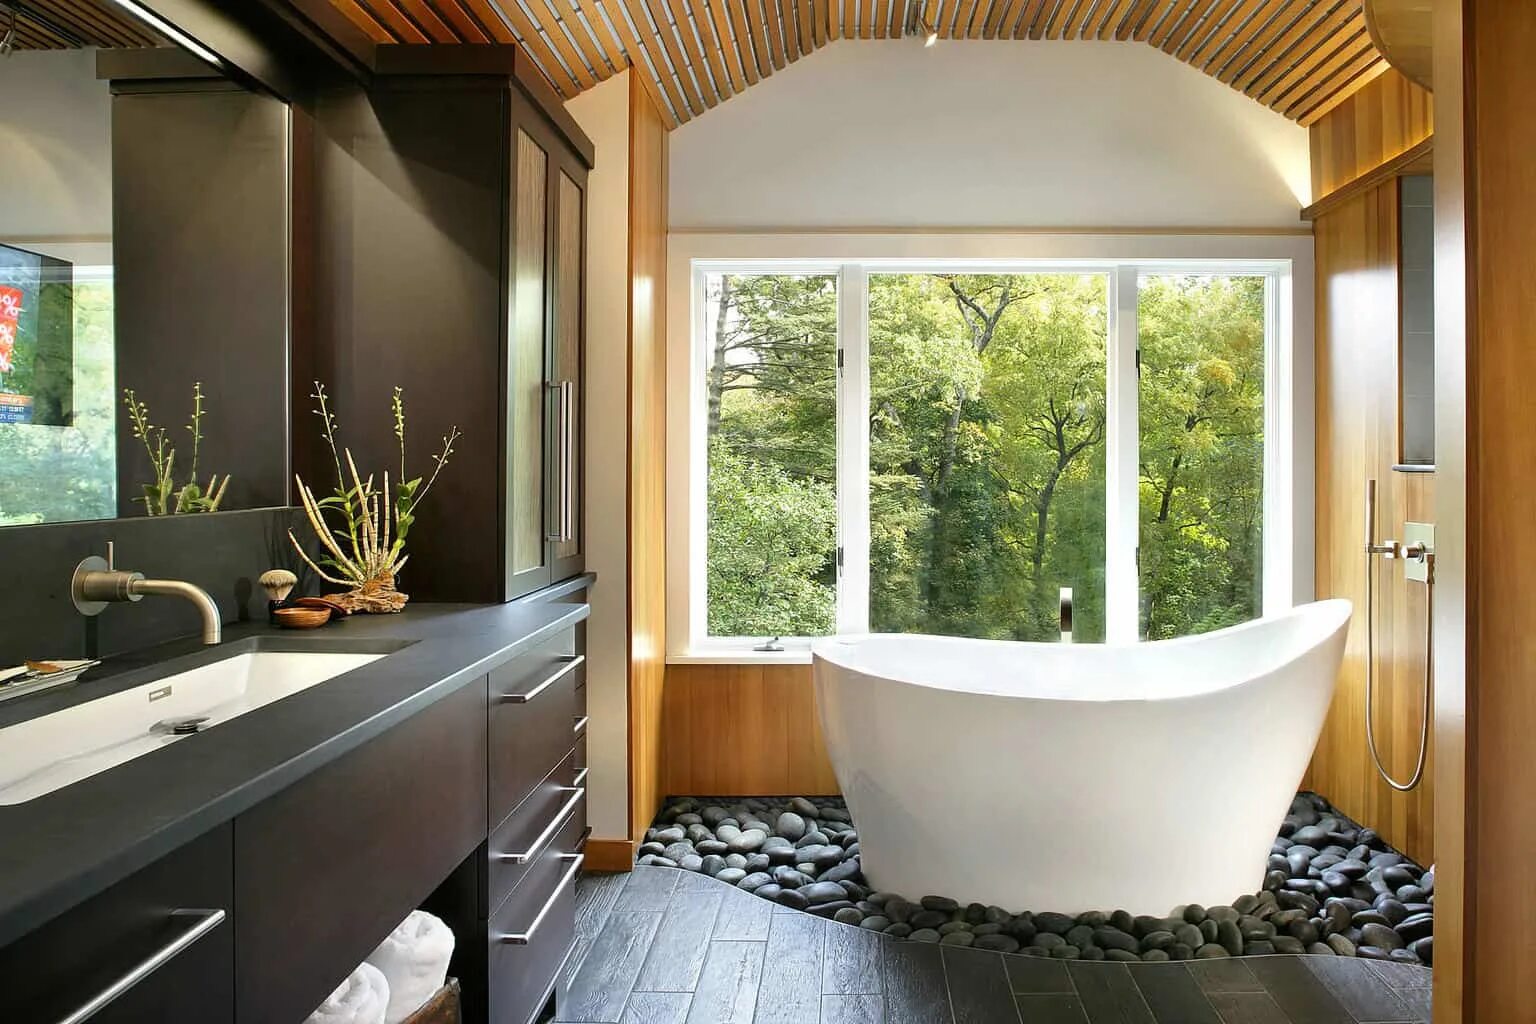 Ванная комната с окном. Интерьер ванной с окном. Небольшая ванная с окном. Ванная с панорамным окном. Ванна с большим окном